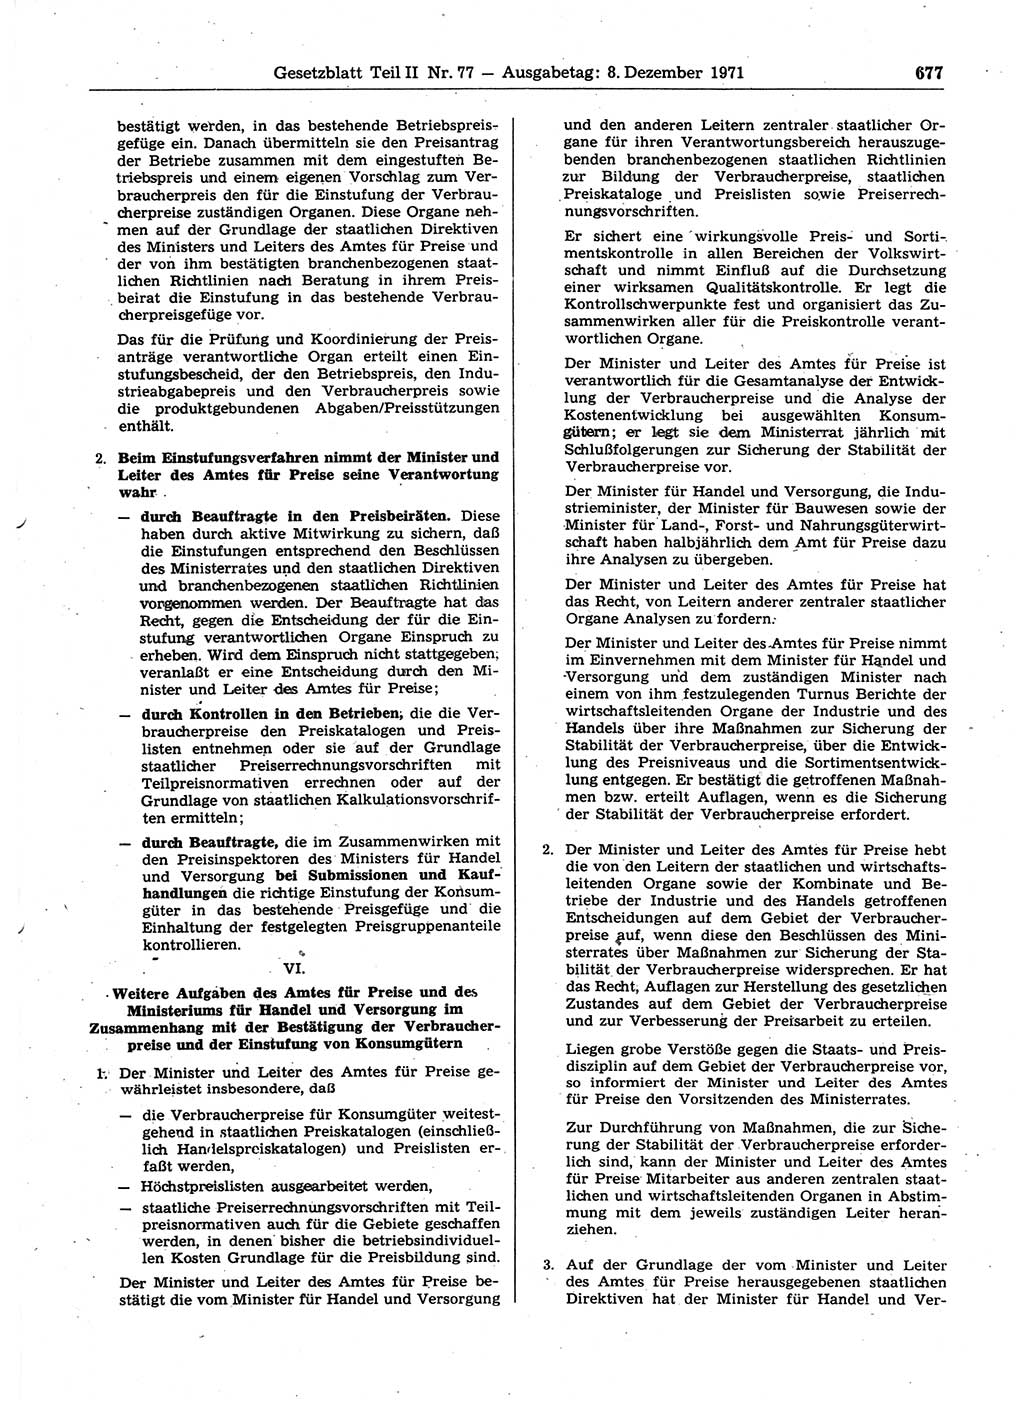 Gesetzblatt (GBl.) der Deutschen Demokratischen Republik (DDR) Teil ⅠⅠ 1971, Seite 677 (GBl. DDR ⅠⅠ 1971, S. 677)